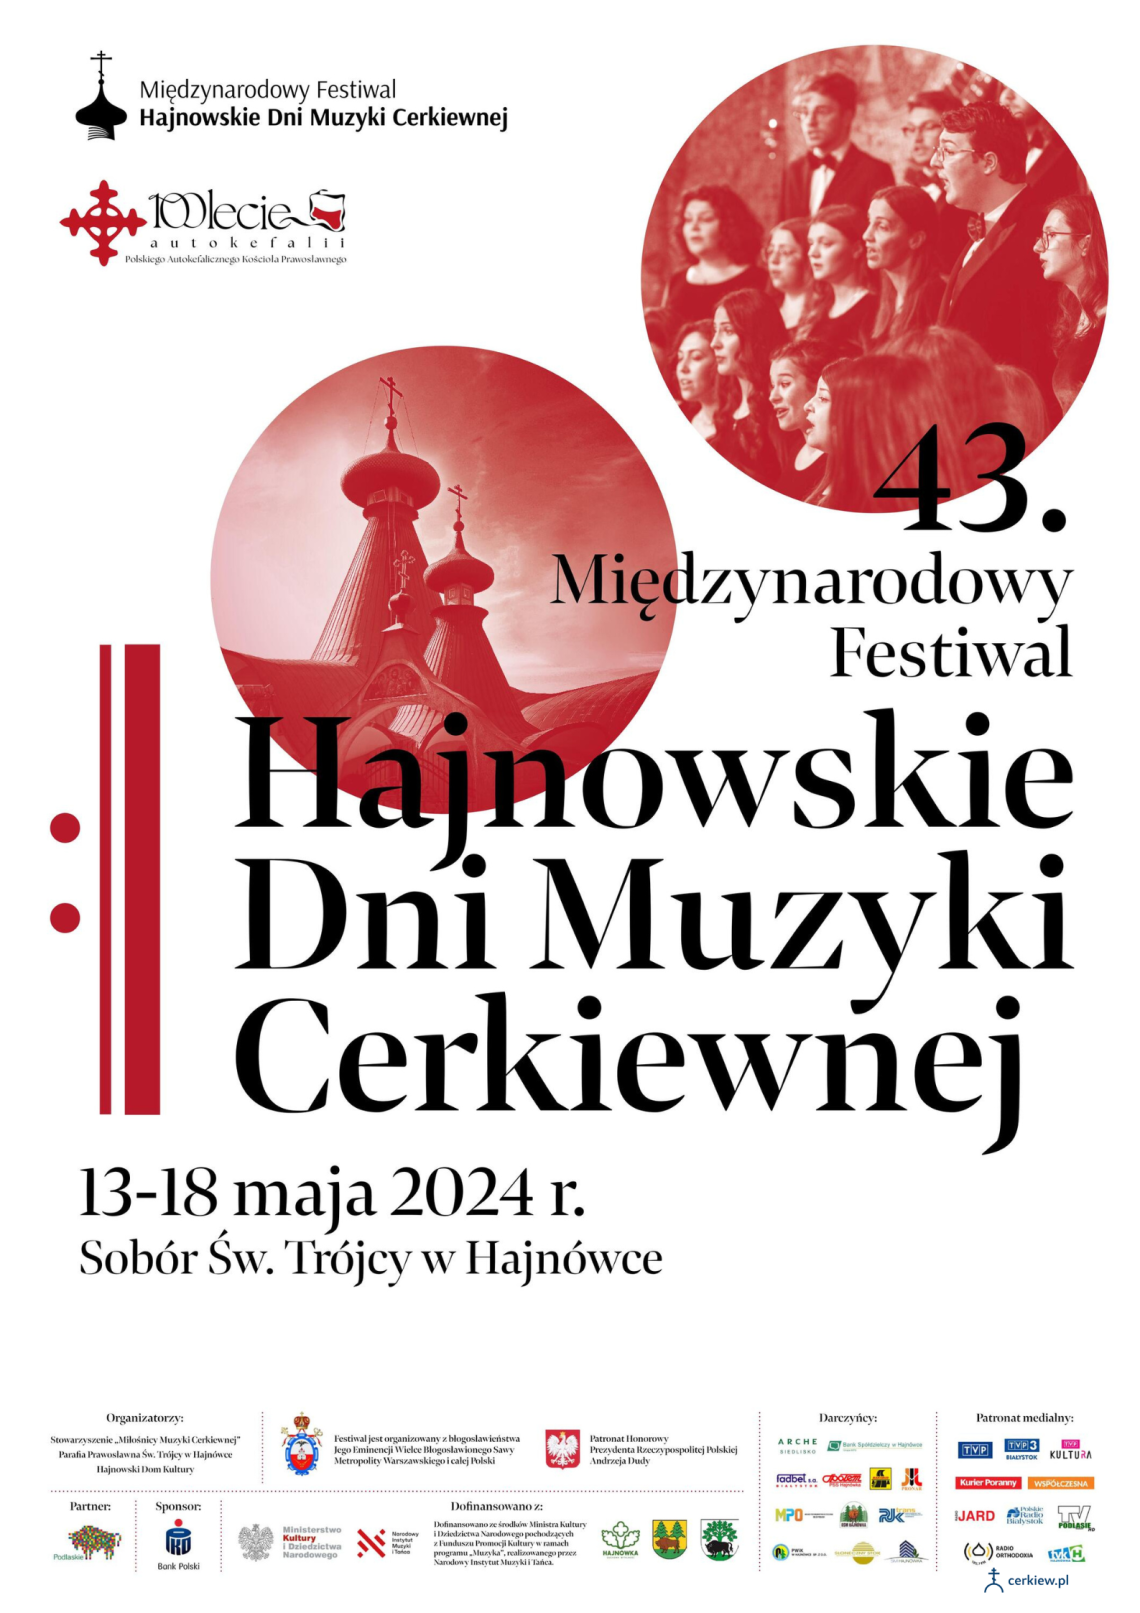 plakat zapowiadający festiwal w biało-czerwonych barwach